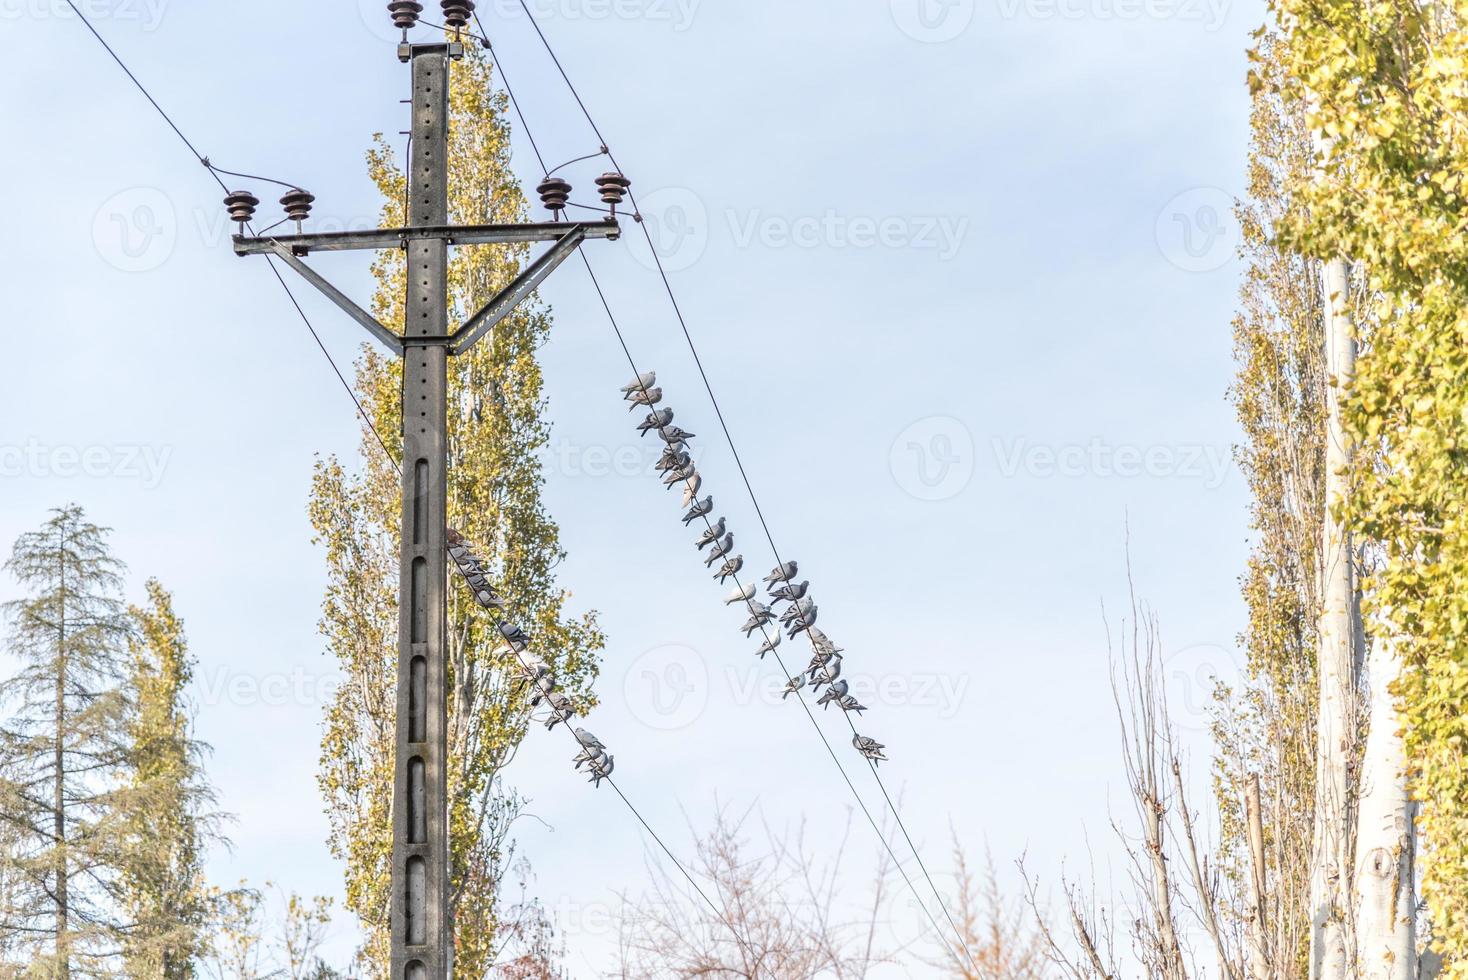 pombos em um poste elétrico foto